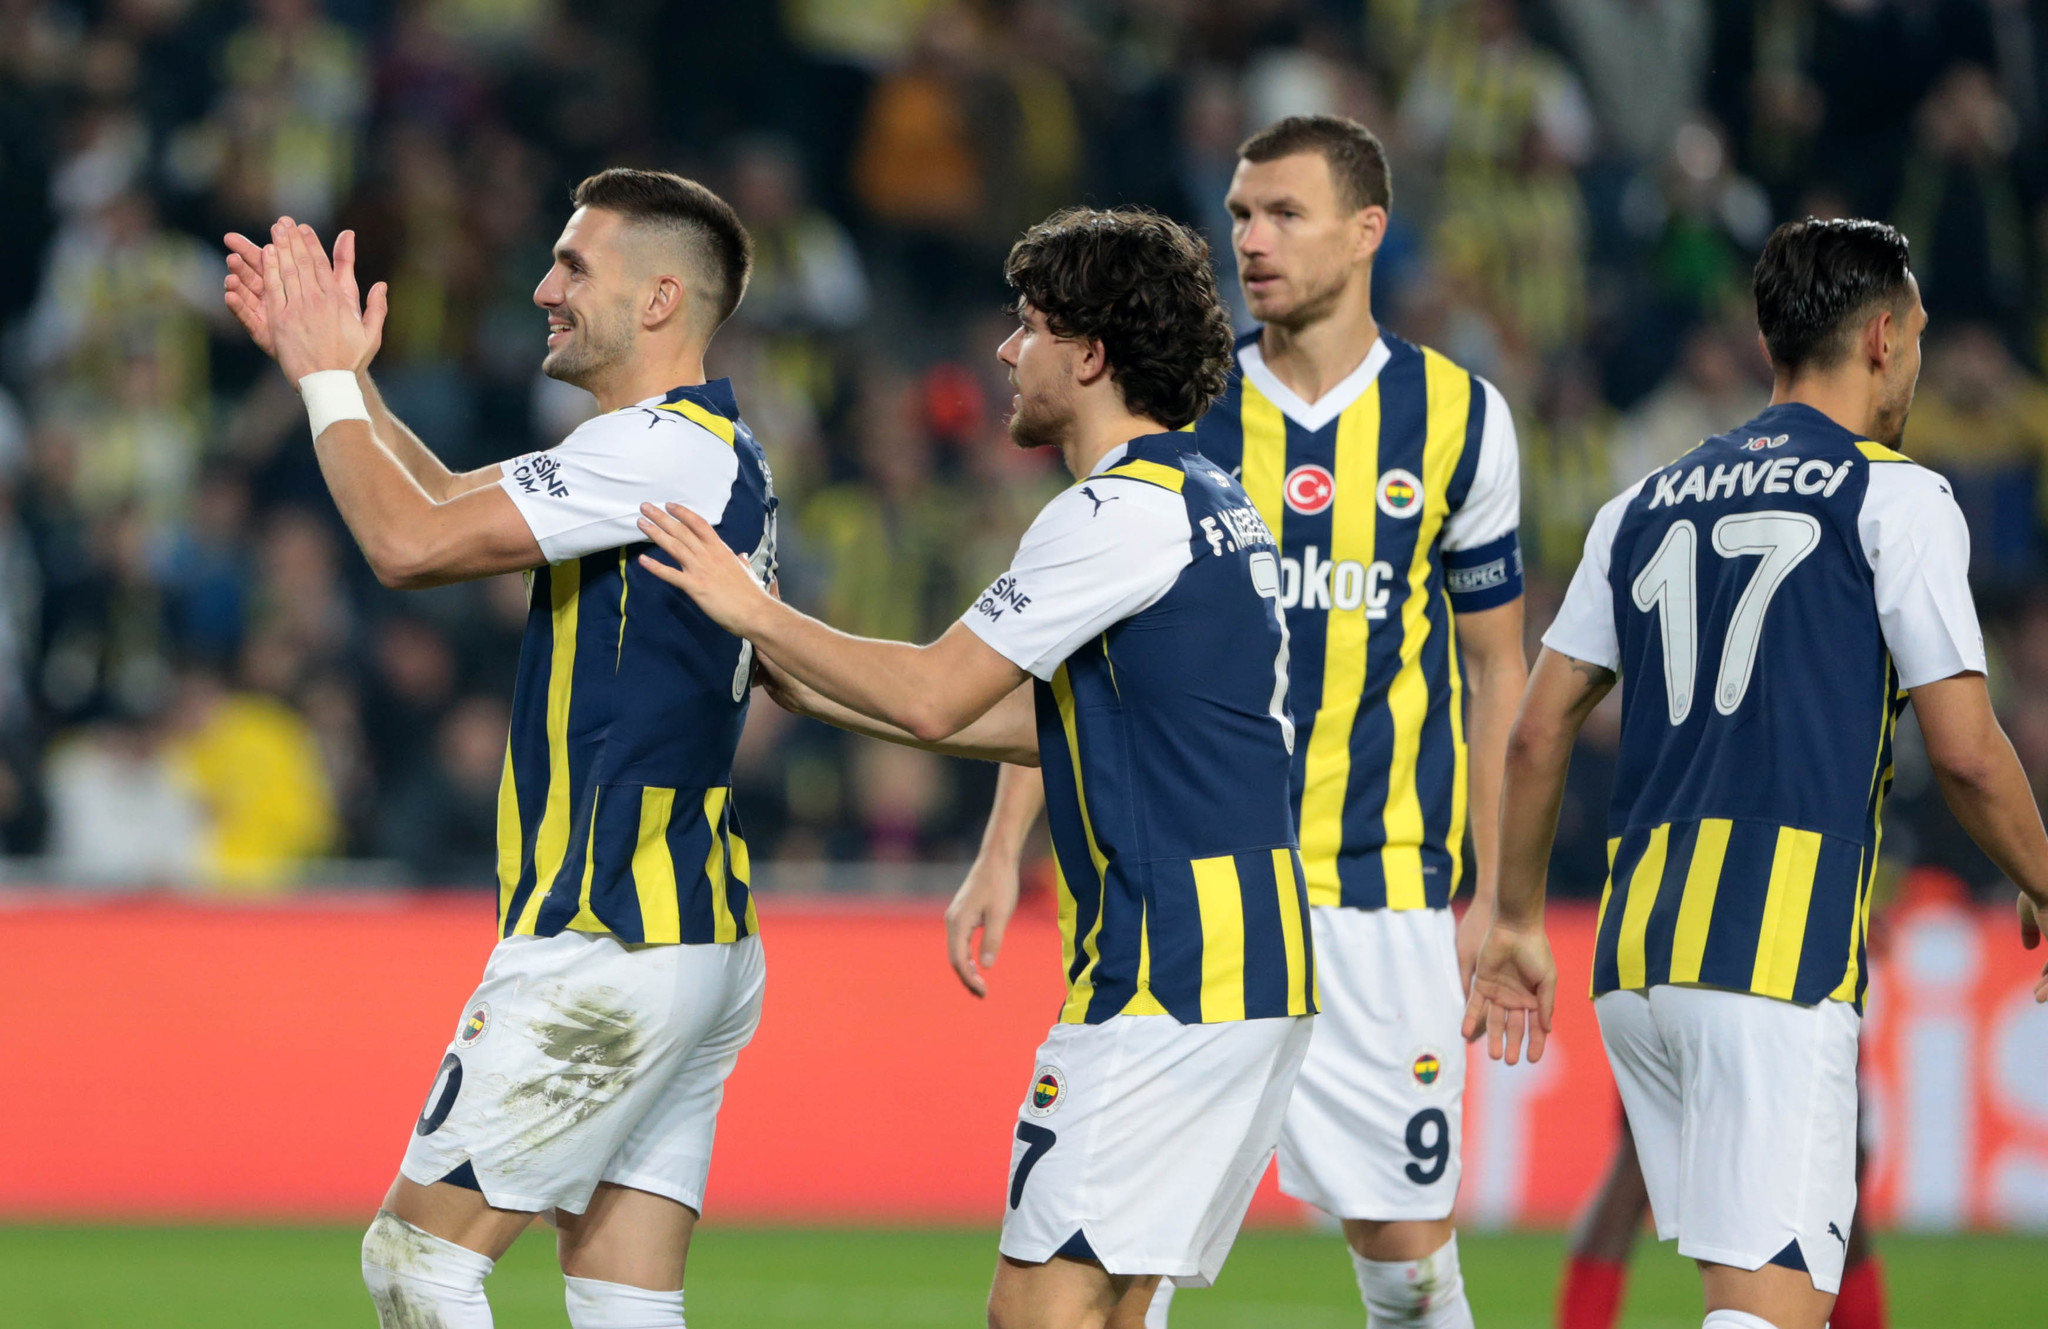 Miguel Crespo’nun menajerinden transfer açıklaması! Fenerbahçe’den ayrılacak mı?